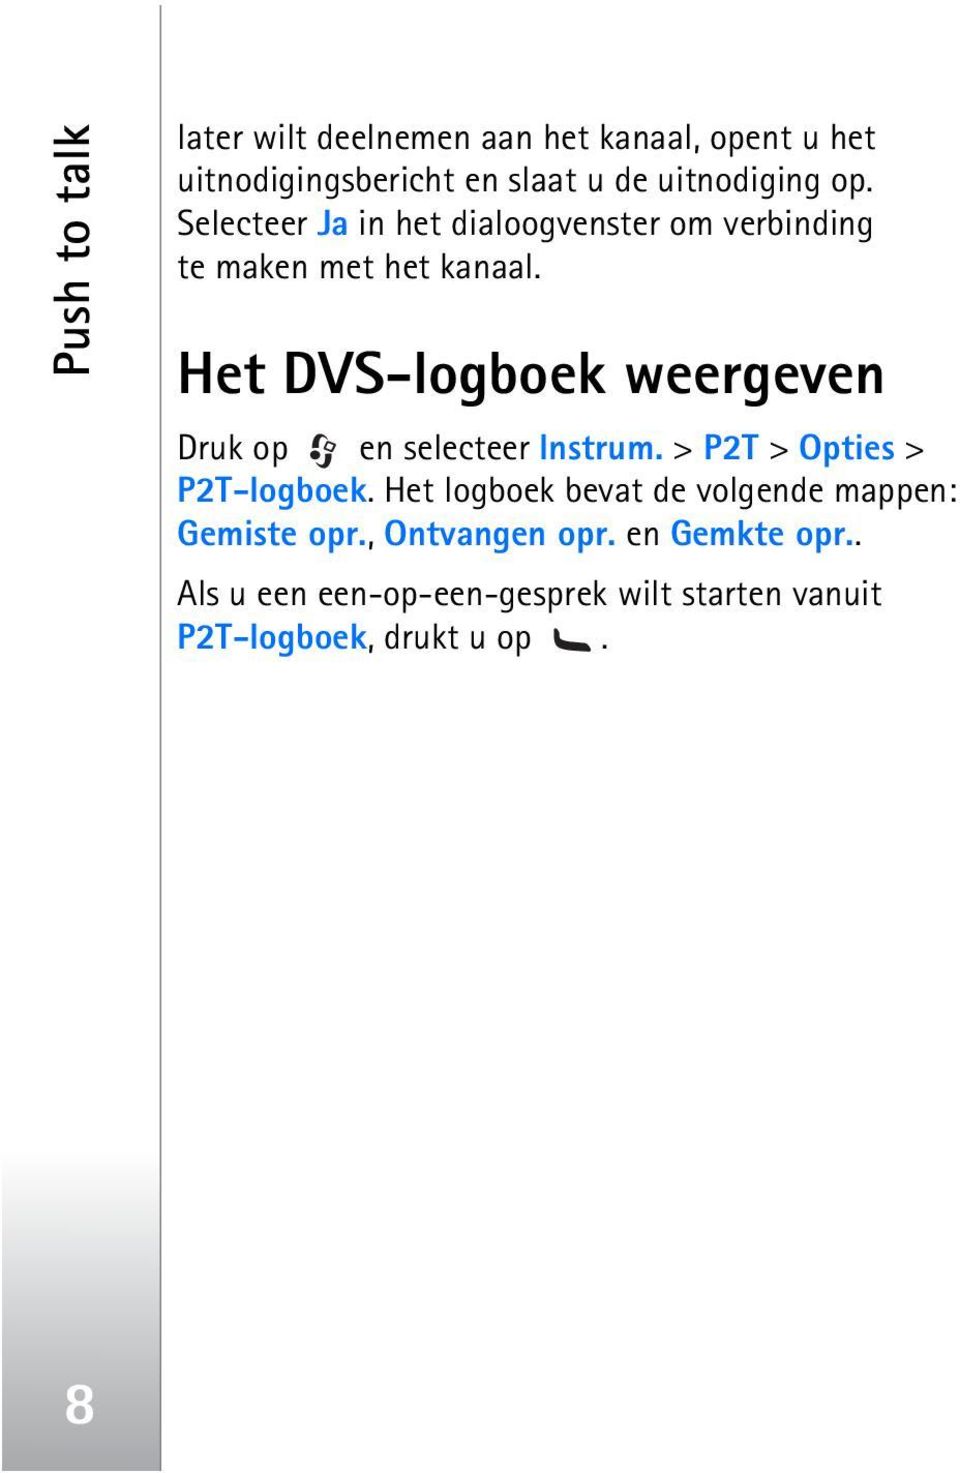 Het DVS-logboek weergeven Druk op en selecteer Instrum. > P2T > Opties > P2T-logboek.